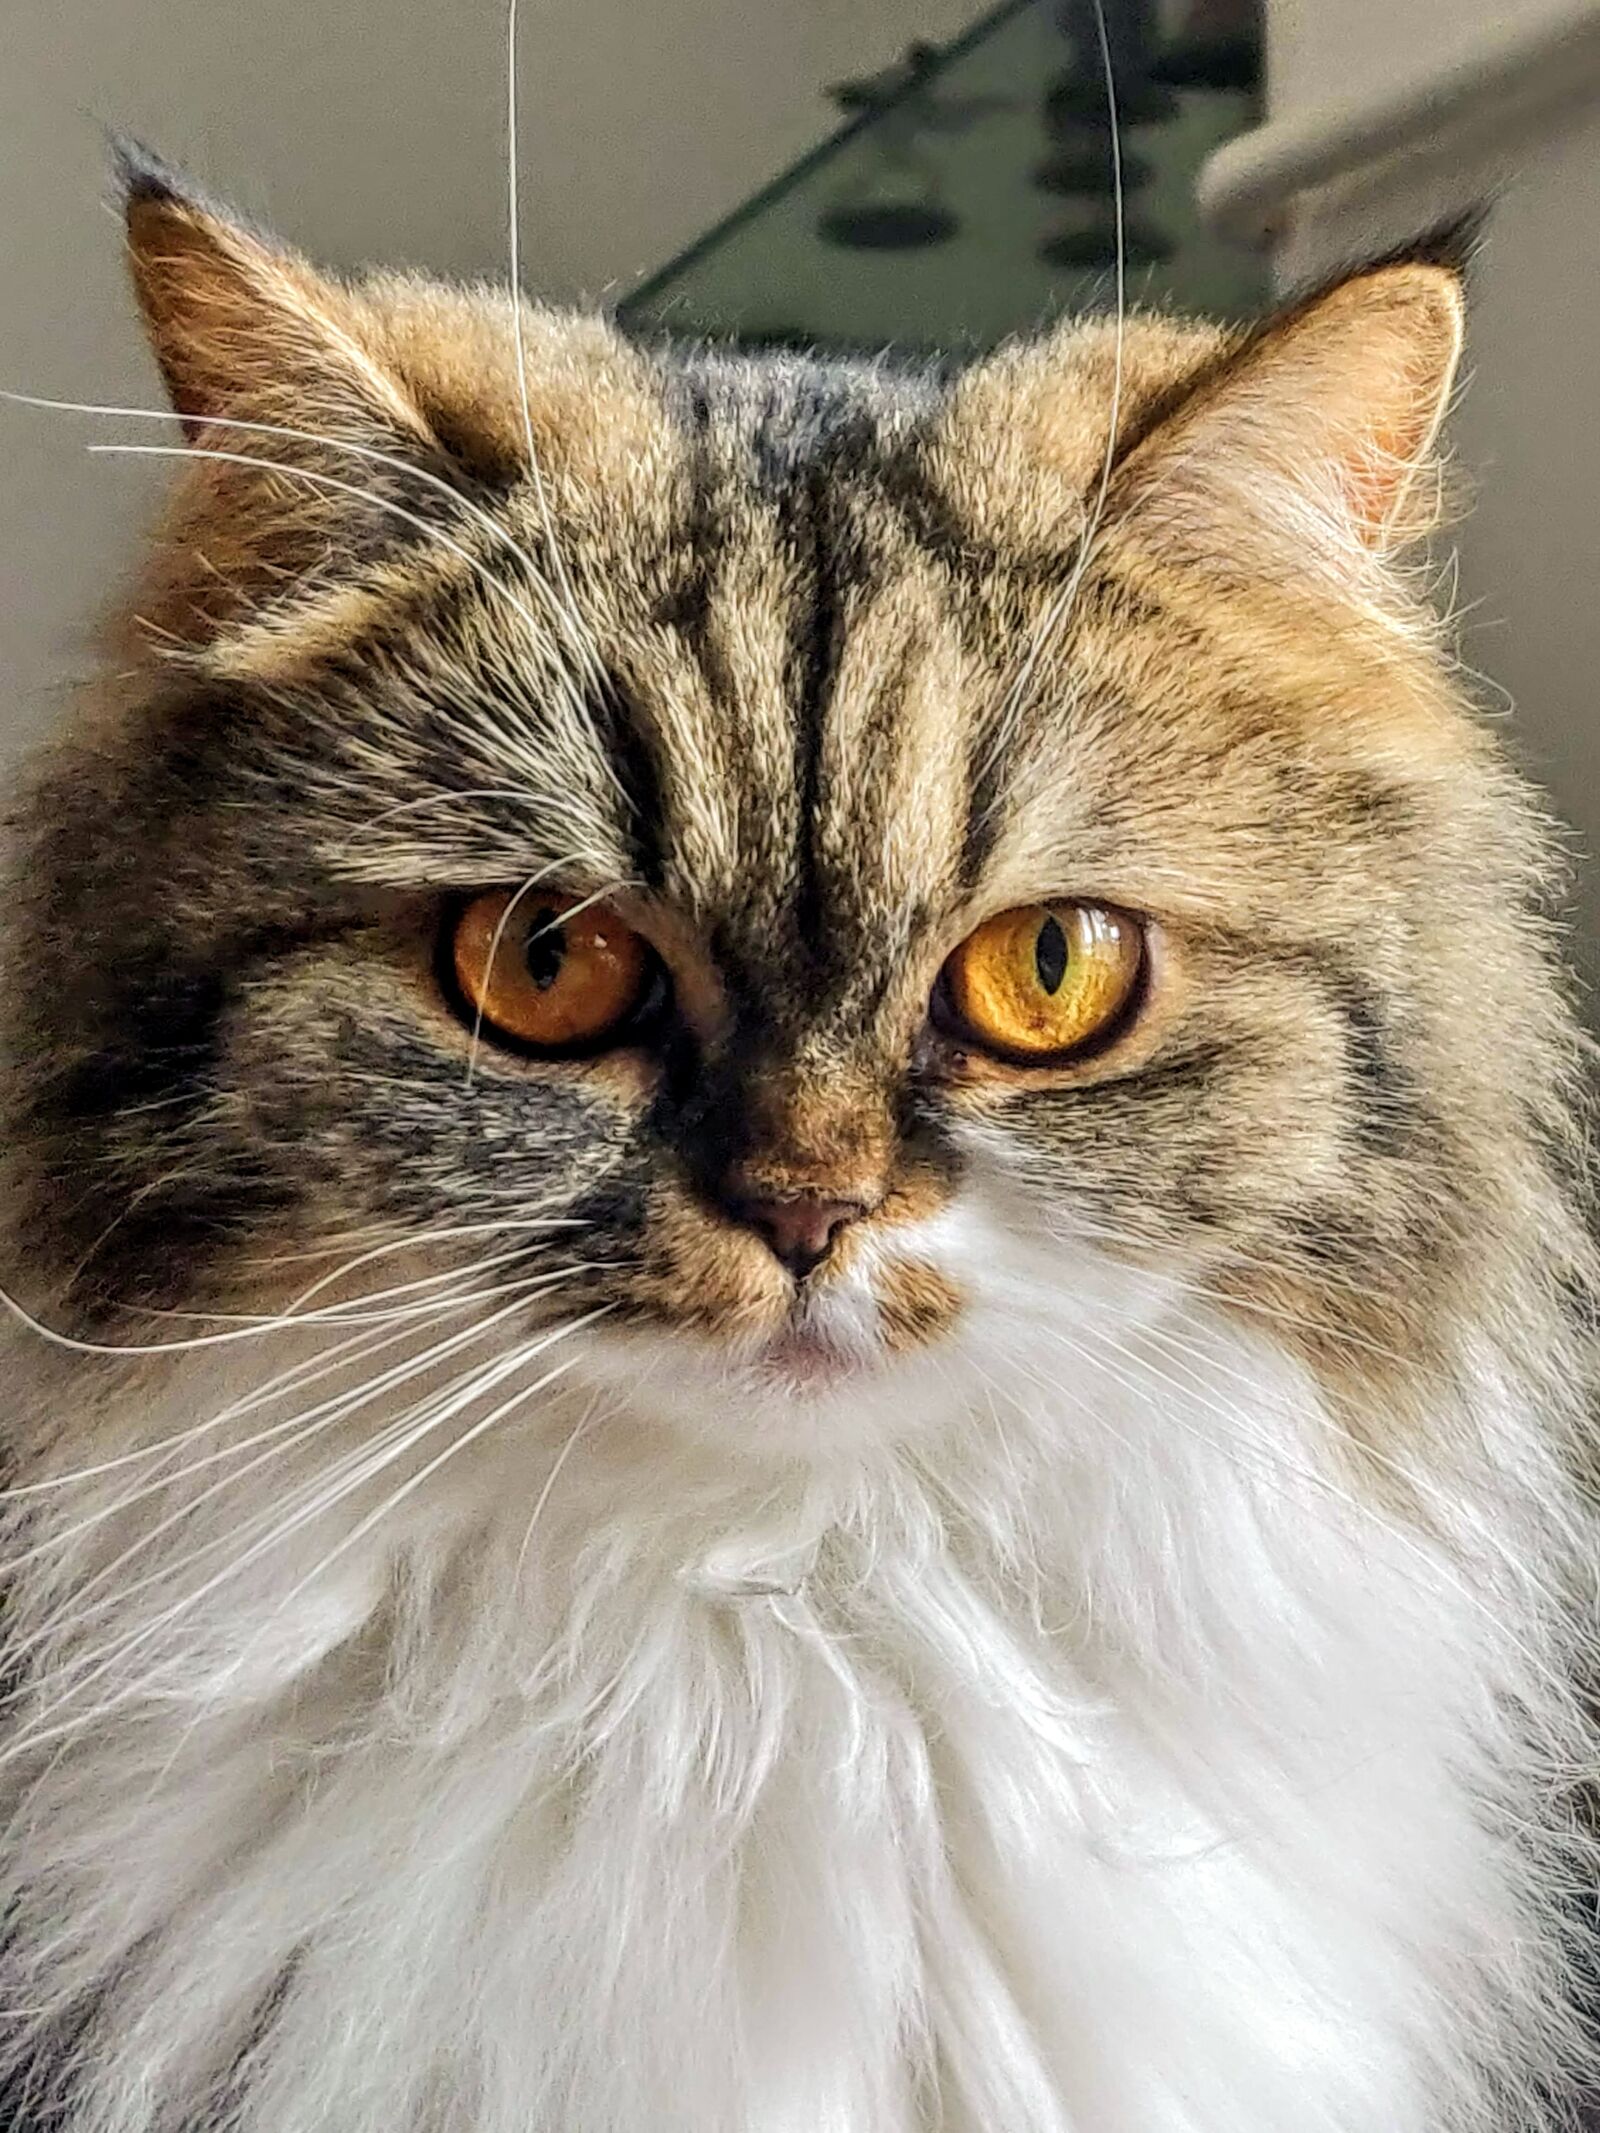 OnePlus 6 sample photo. Cat, feline, eyes photography